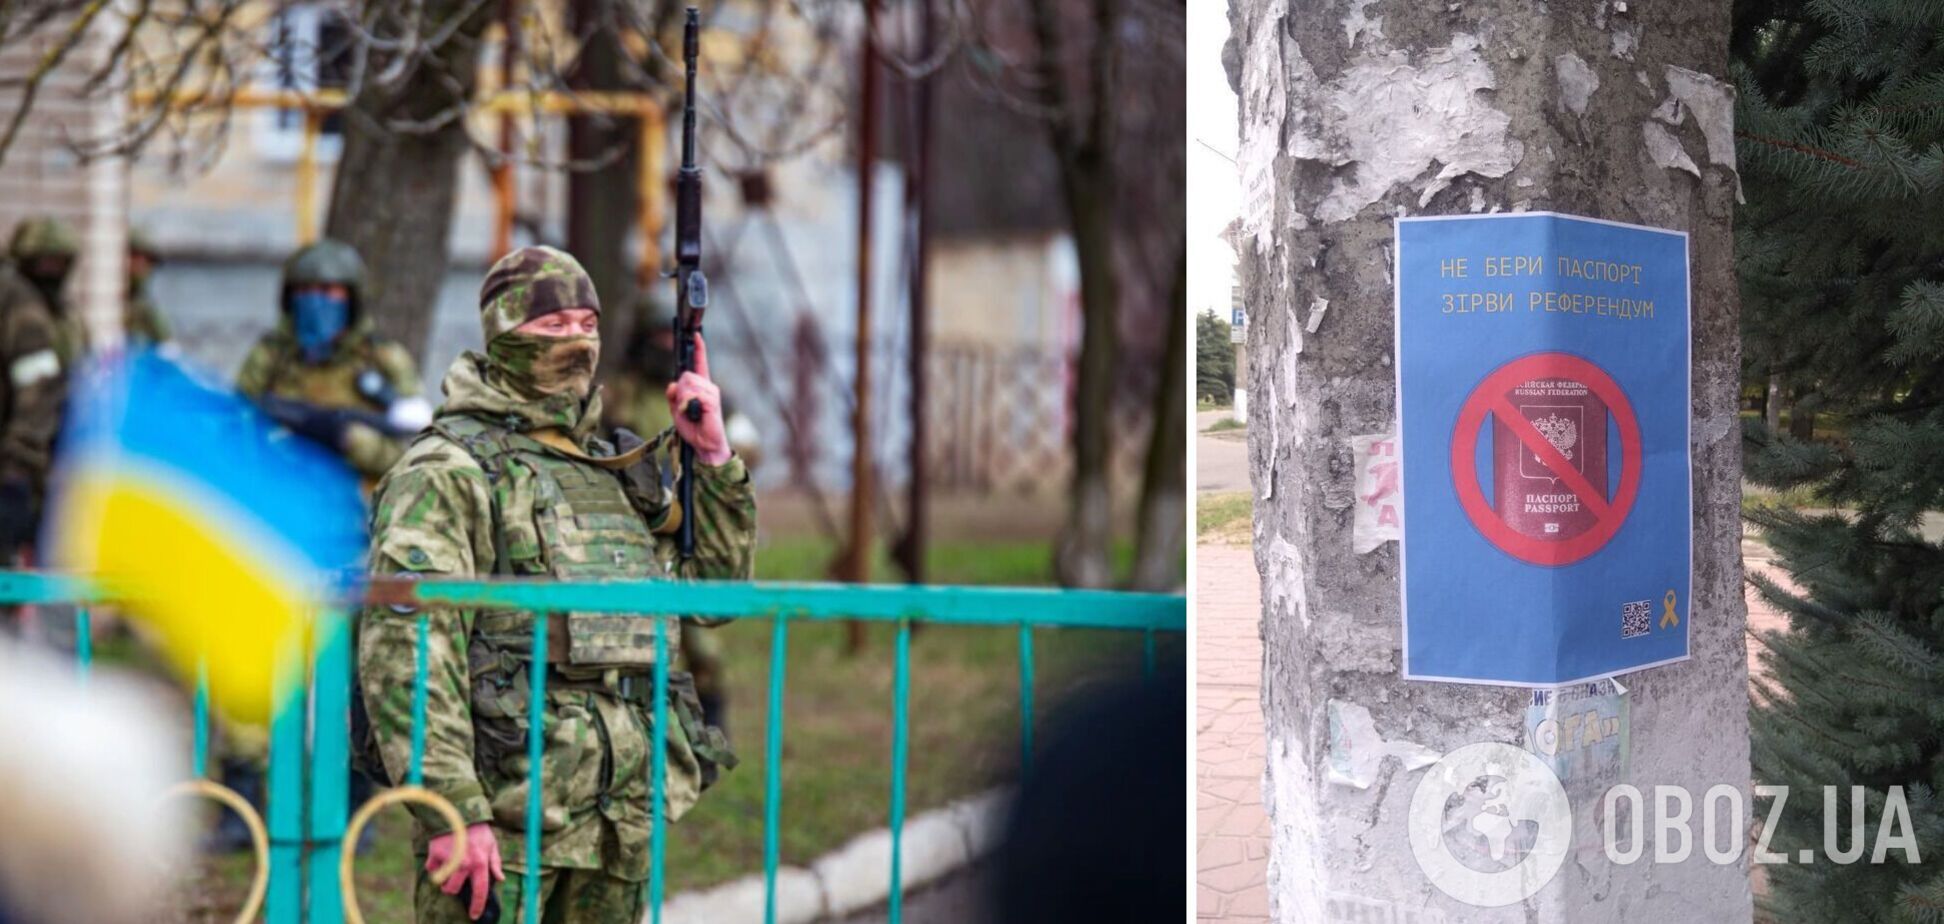 'ЗСУ йдуть': партизани нагадали окупантам, що Херсон – це Україна, і звернулися до населення. Фото